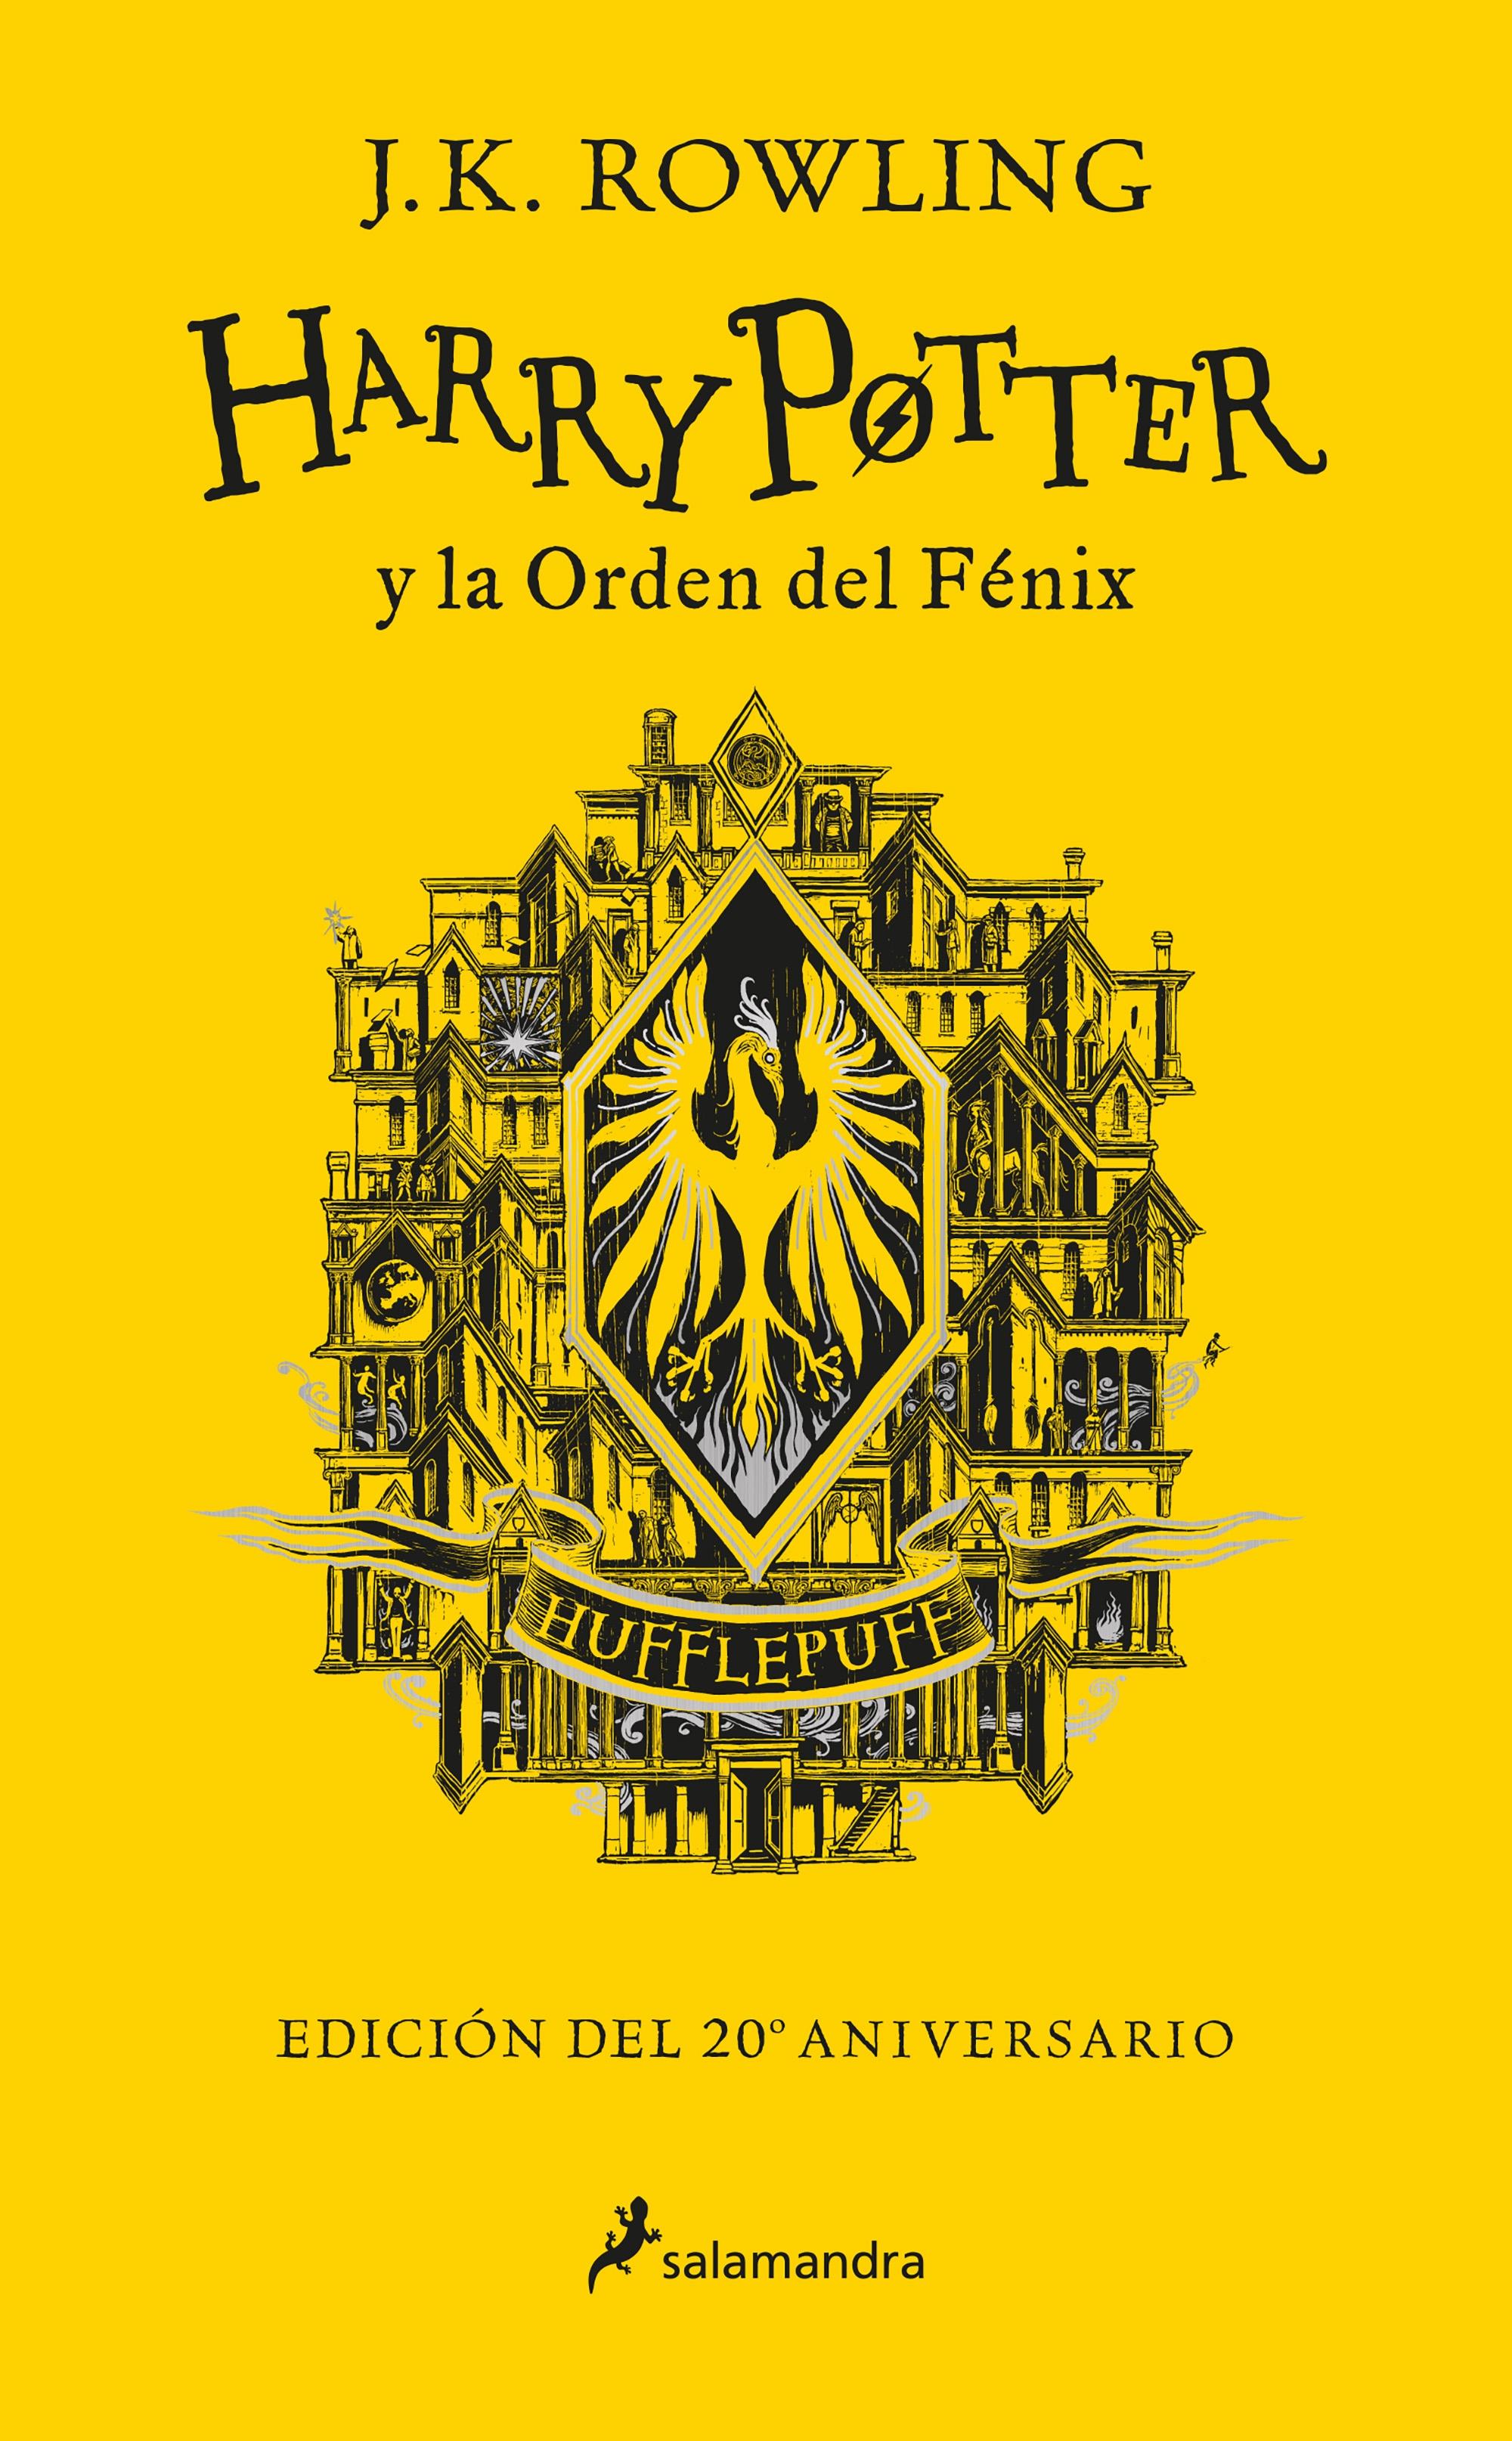 Harry Potter y la Orden del Fenix Edicion "Edicion Hufflepuff del 20º Aniversario"